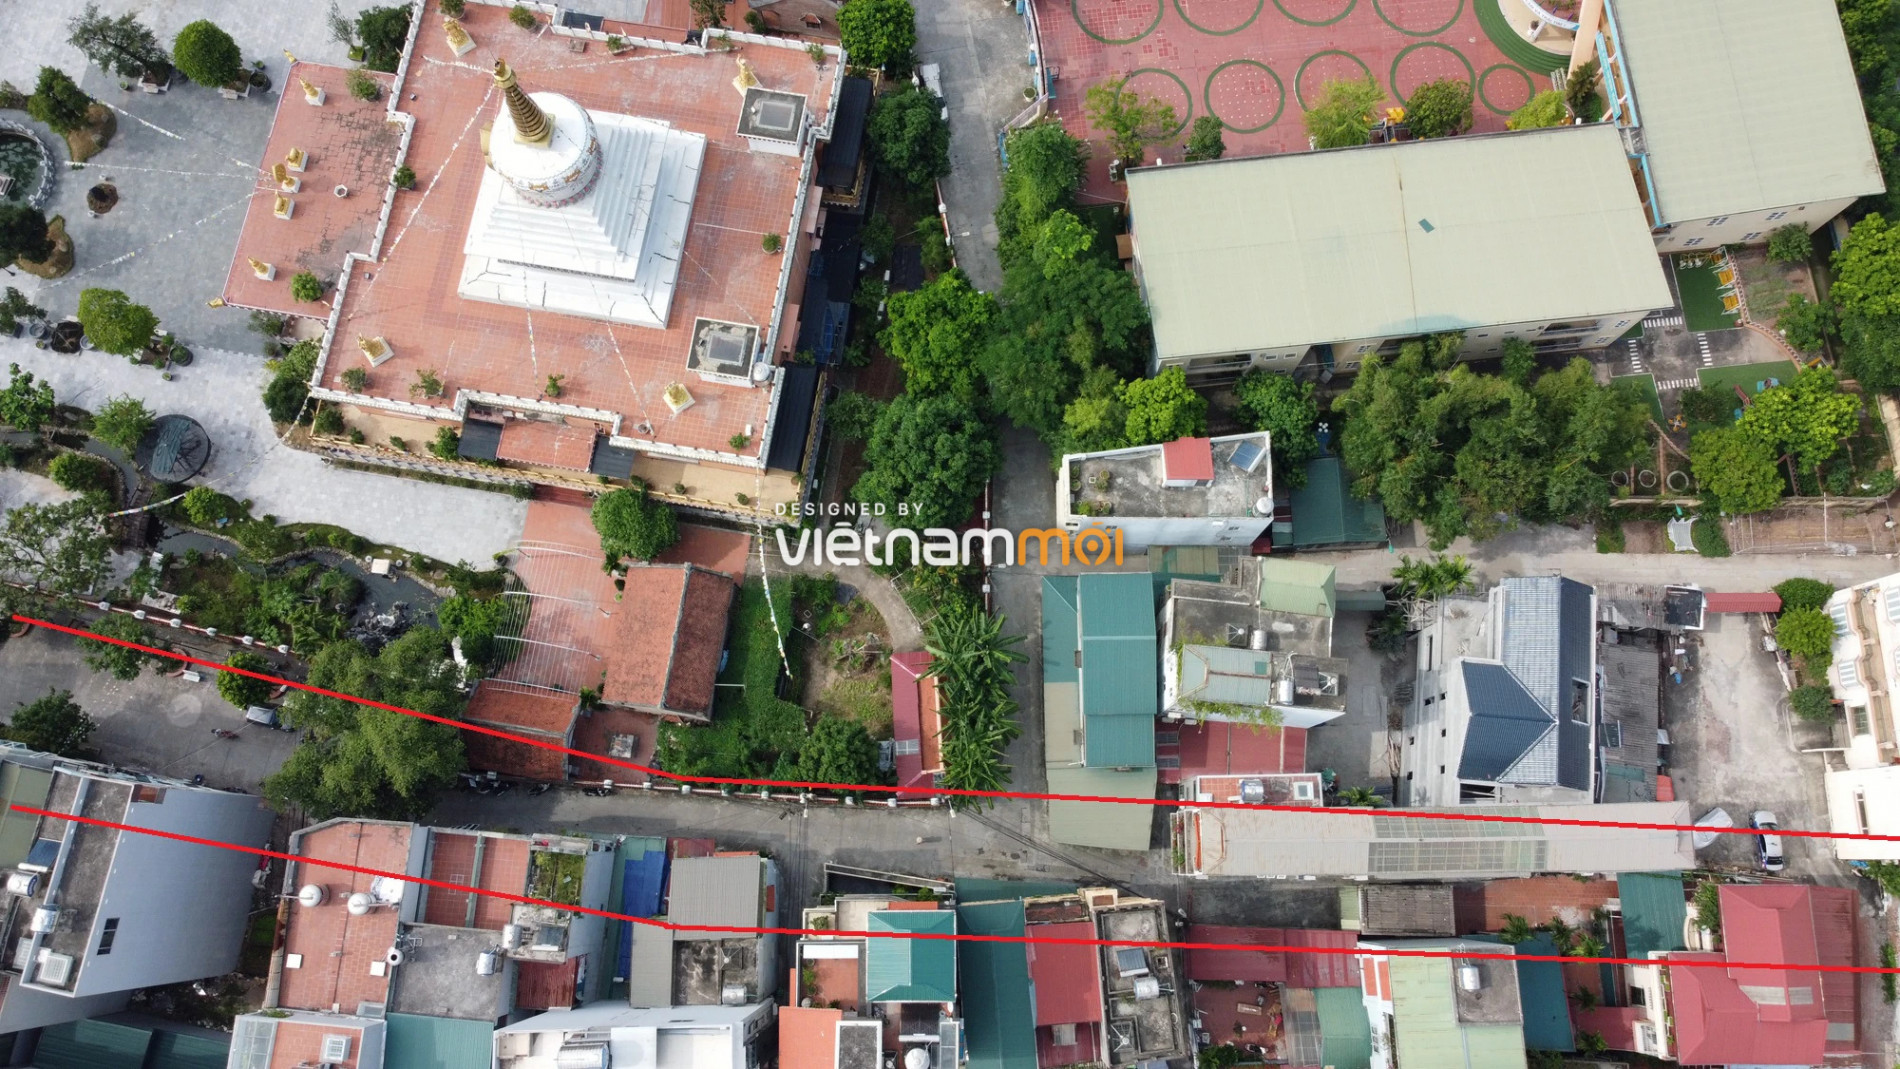 Những khu đất sắp thu hồi để mở đường ở xã Thanh Liệt, Thanh Trì, Hà Nội (phần 7) - Ảnh 16.